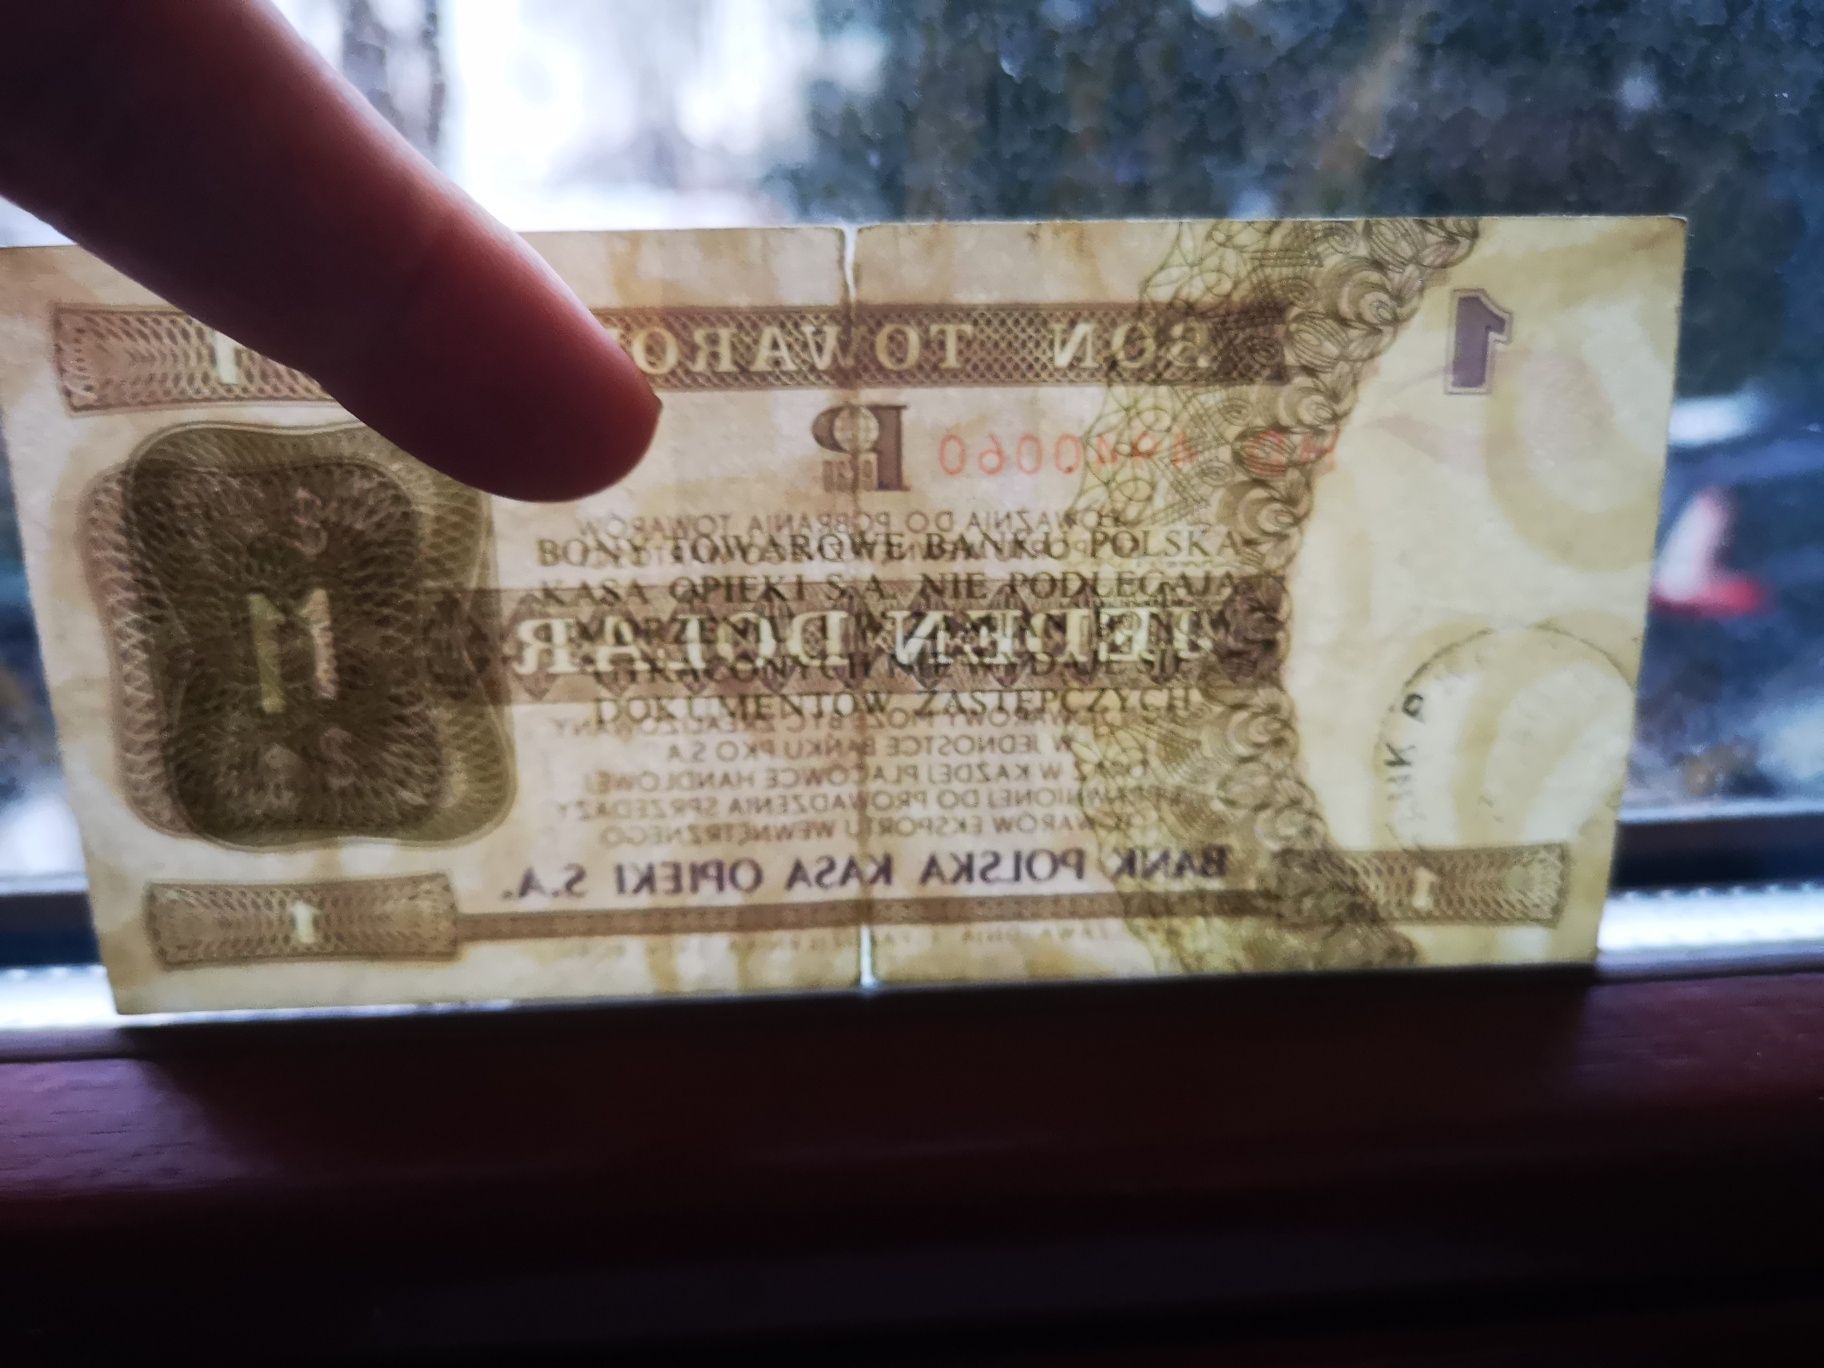 1 dolar pewex bon towarowy 1979 Kraków banknot